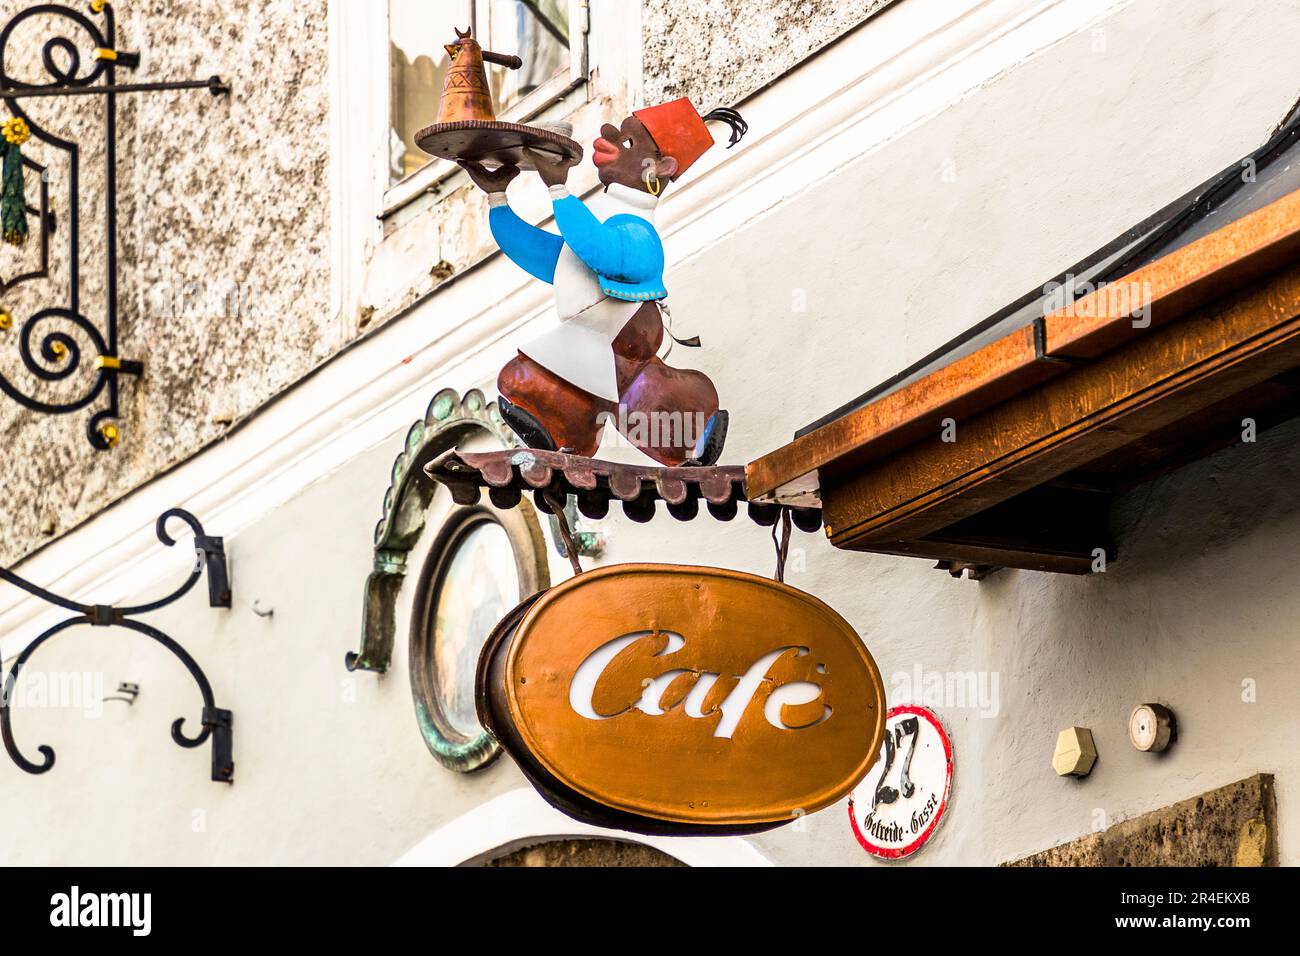 Cafe in the Getreidegasse 27, Salzburg, Austria Stock Photo